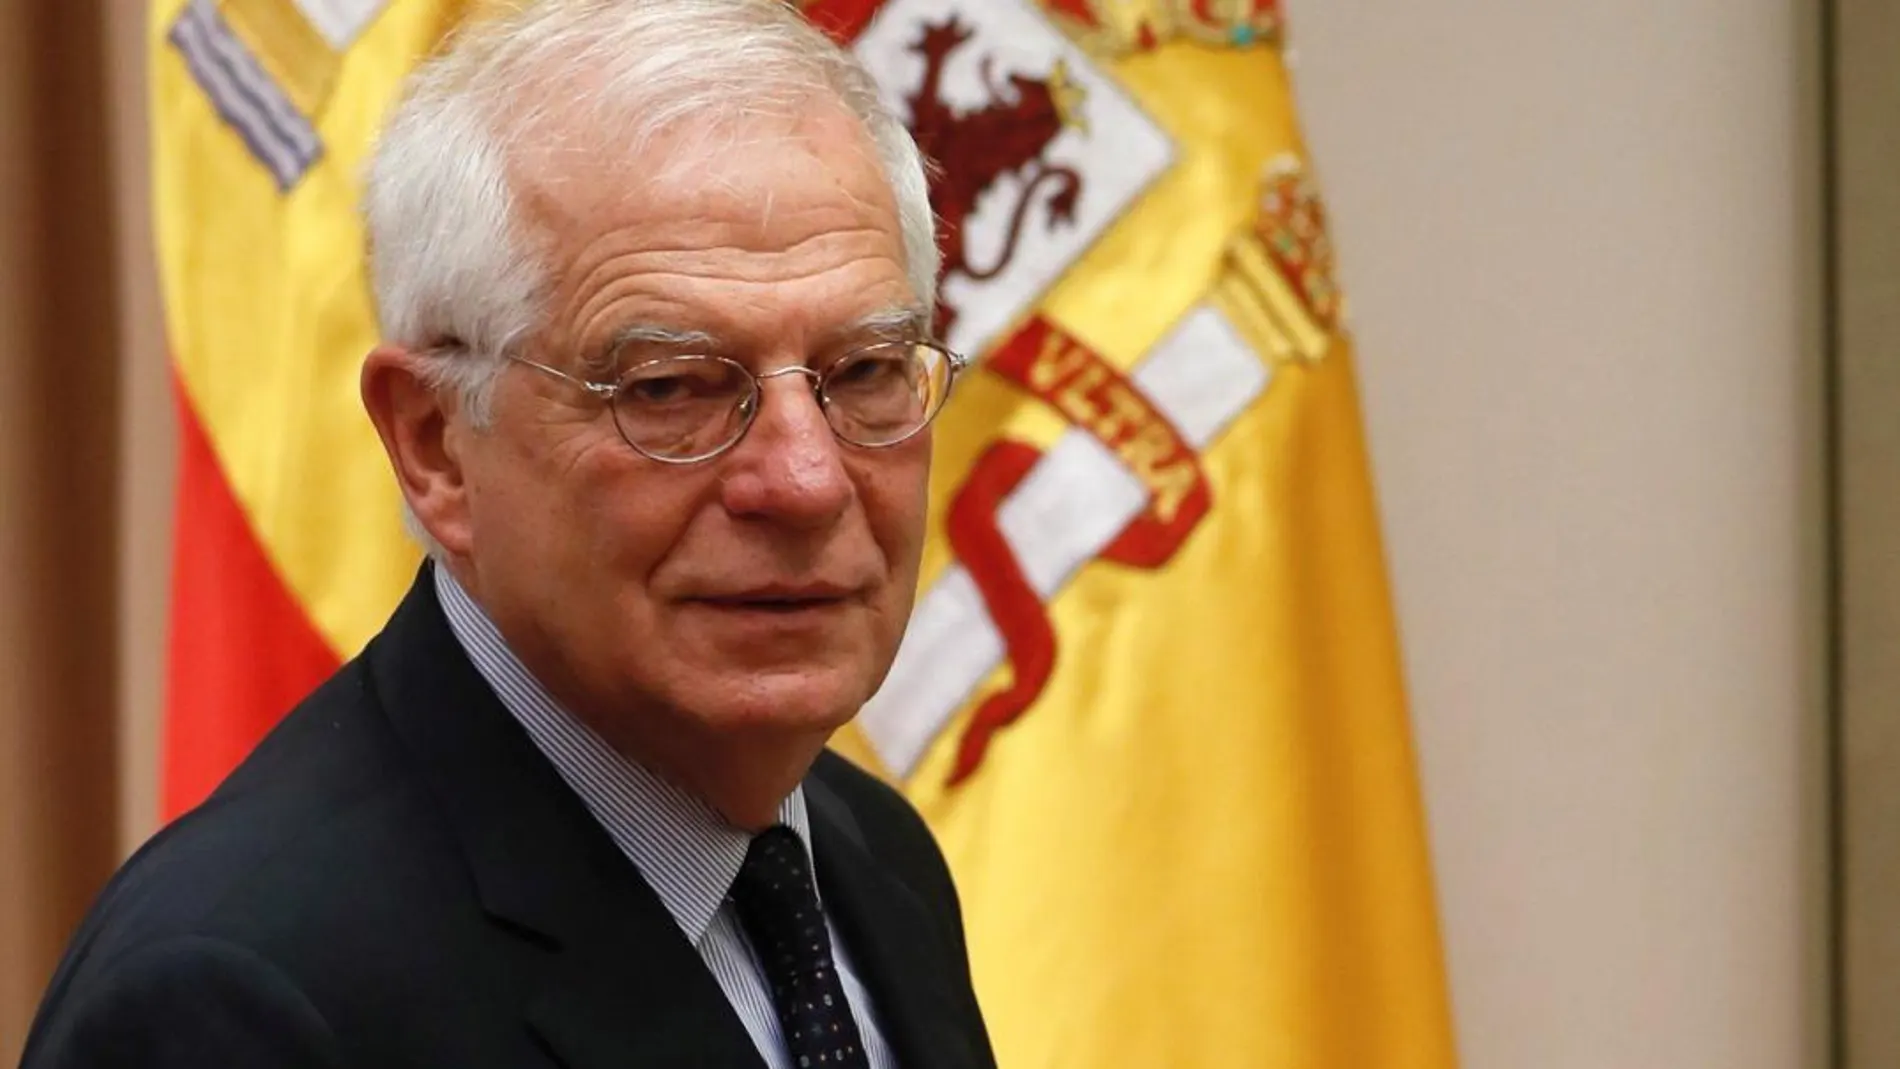 El ministro de Asuntos Exteriores, Josep Borrell, antes de comparecer ante la comisión correspondiente del Congreso. Foto: Efe